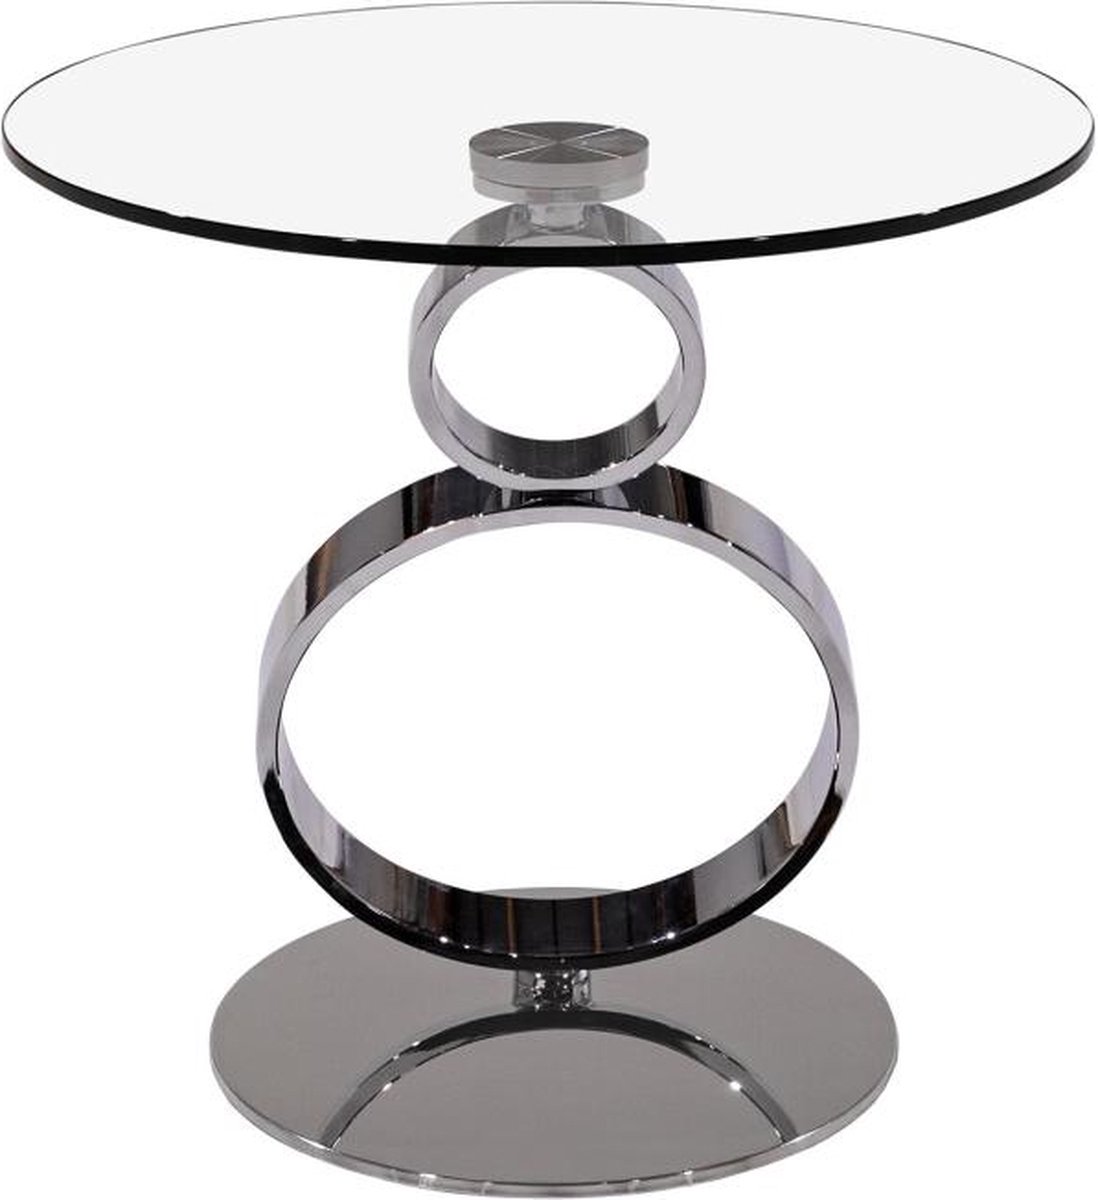 Table basse avec plateau tournant JOLINE - verre trempé et métal L 131,5 cm  x H 42 cm